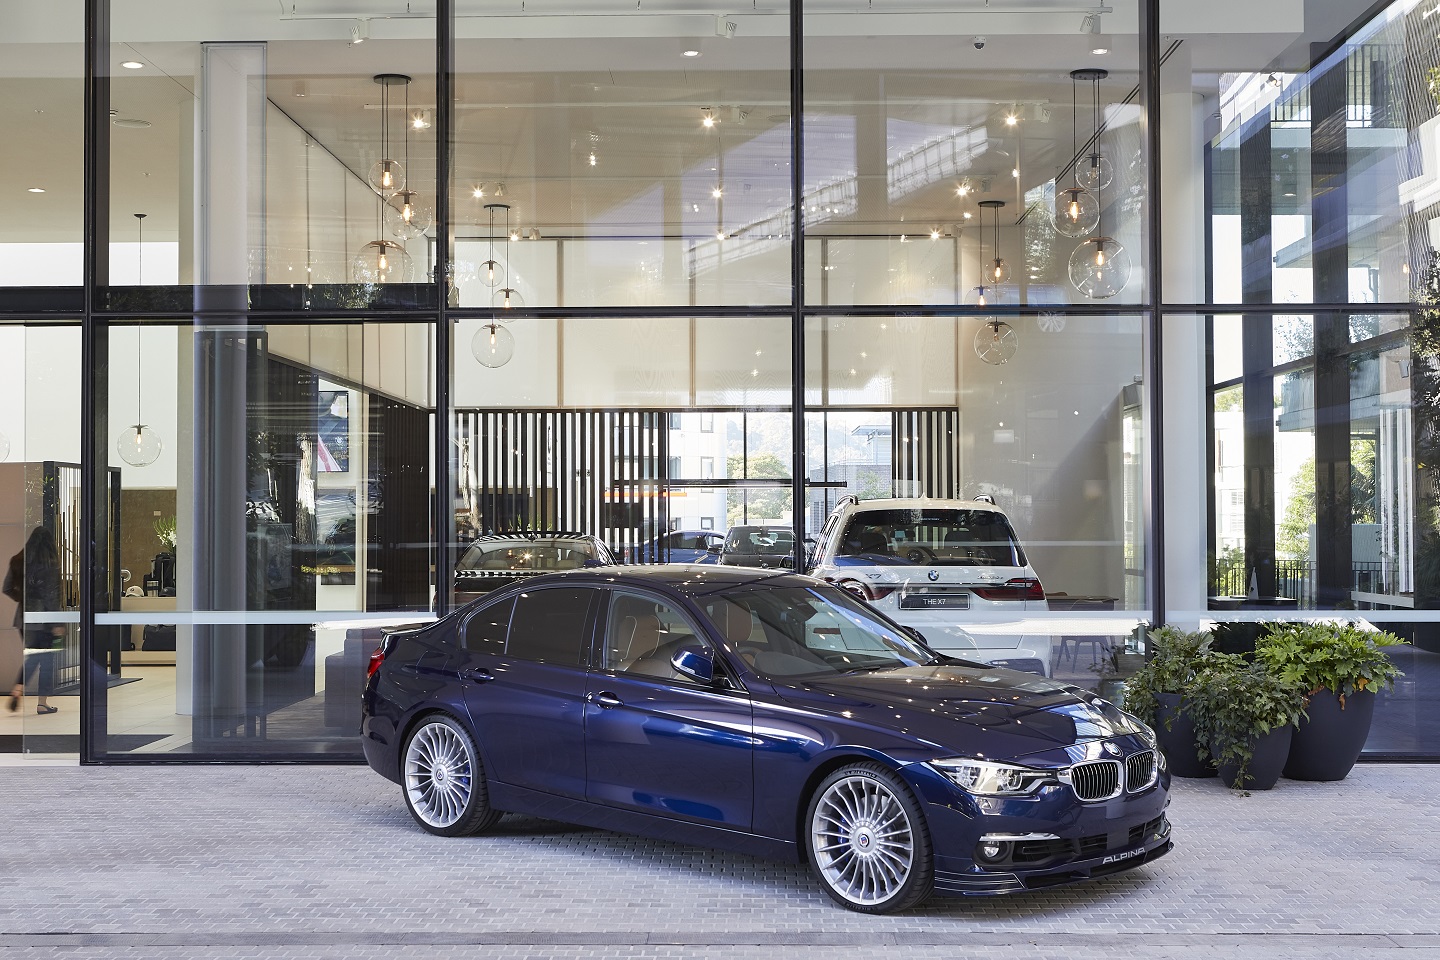 BMW Sydney - Car Dealership | carsguide